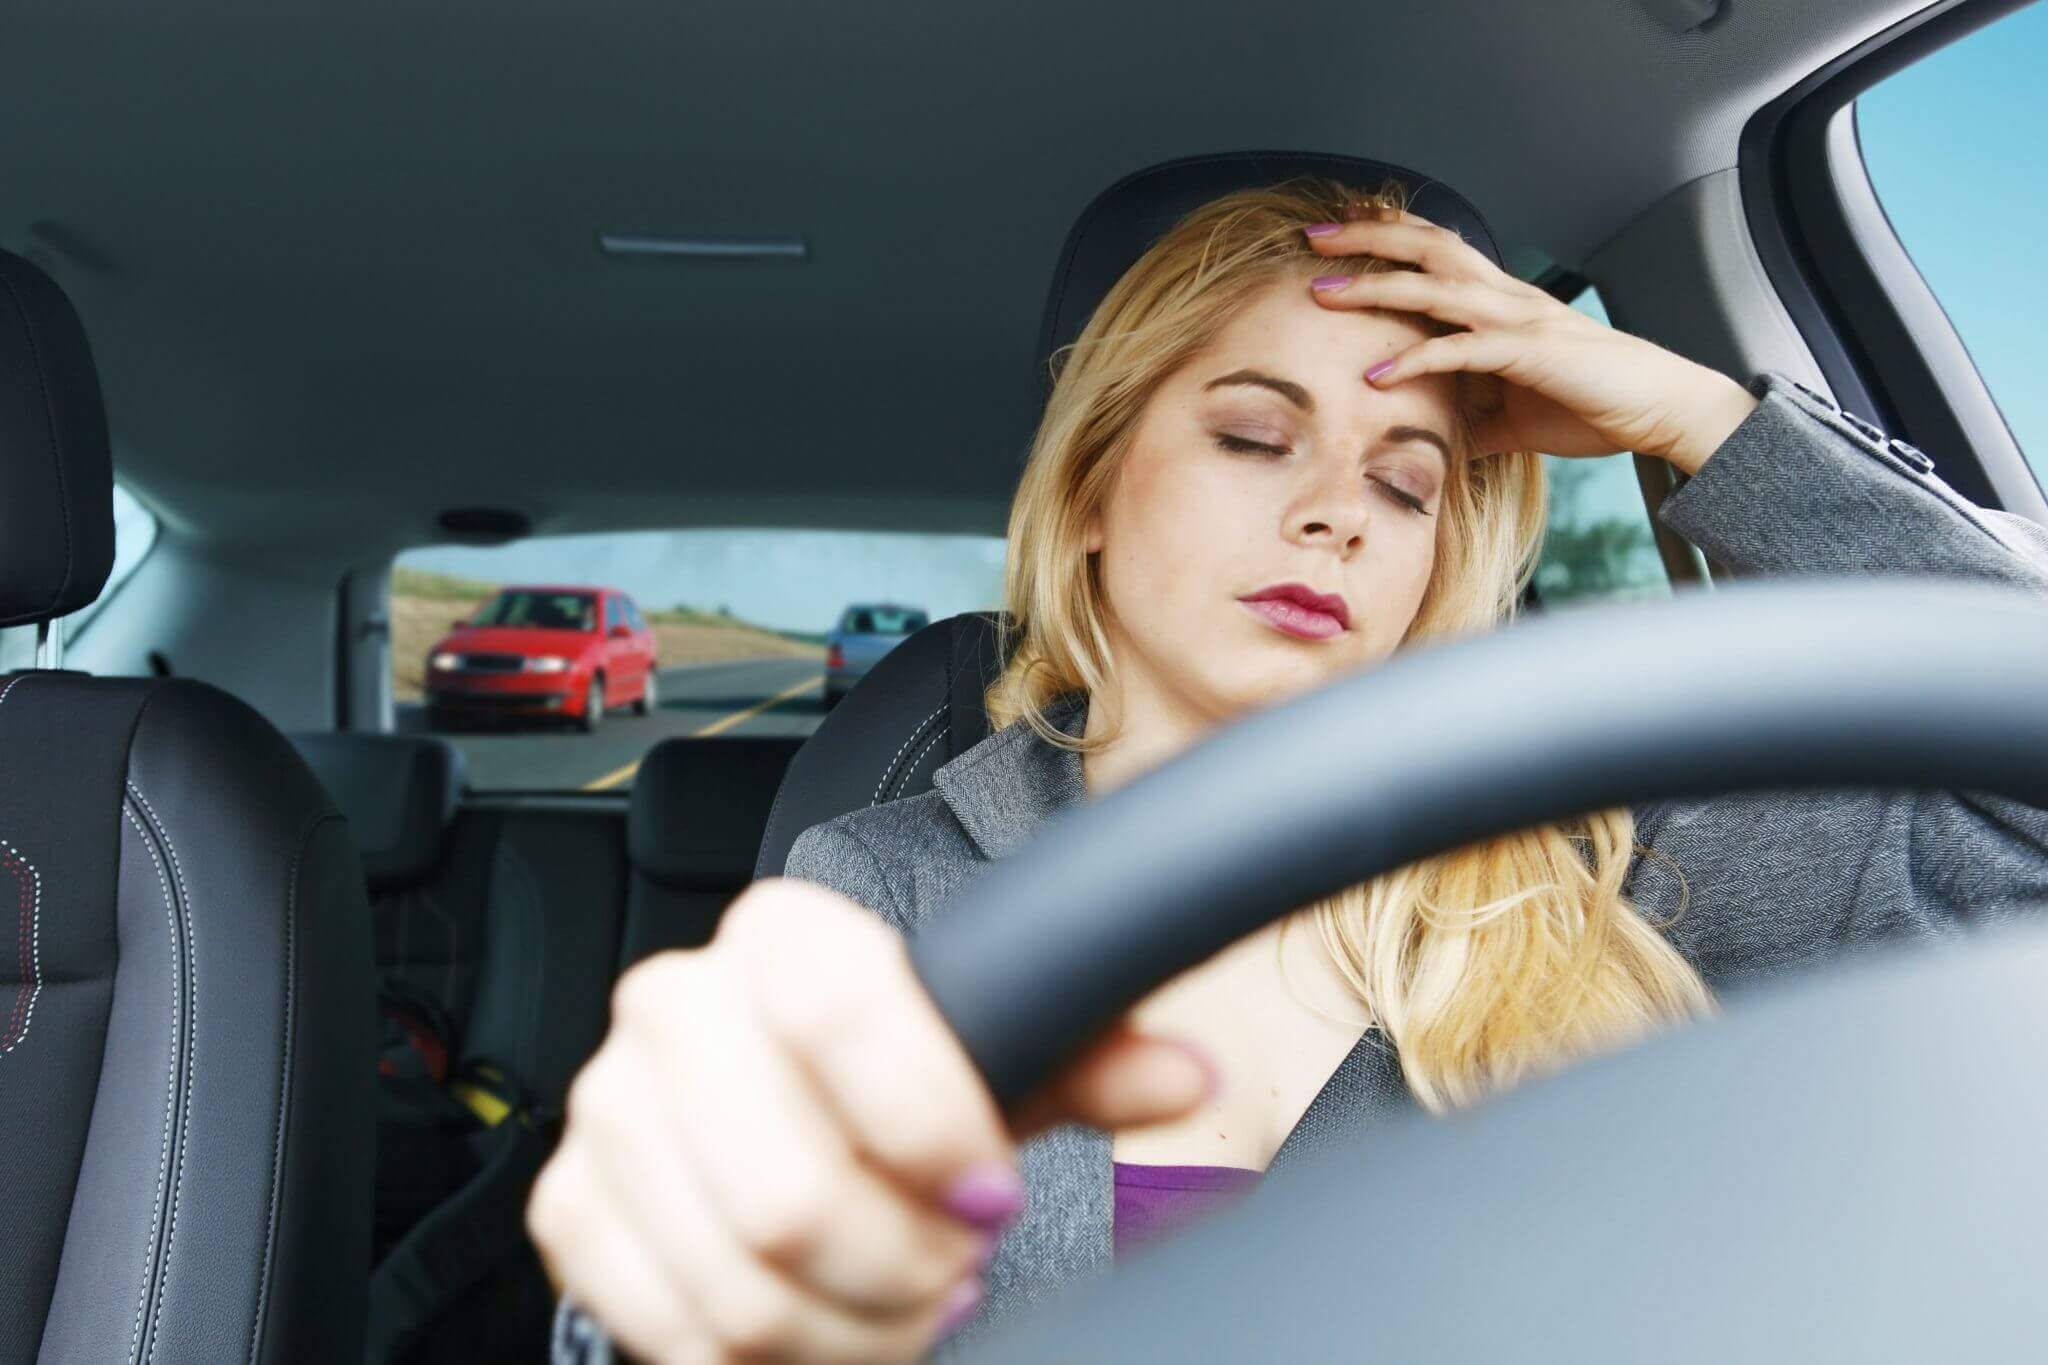 مبارزه با خستگی و خواب آلودگی در هنگام رانندگی